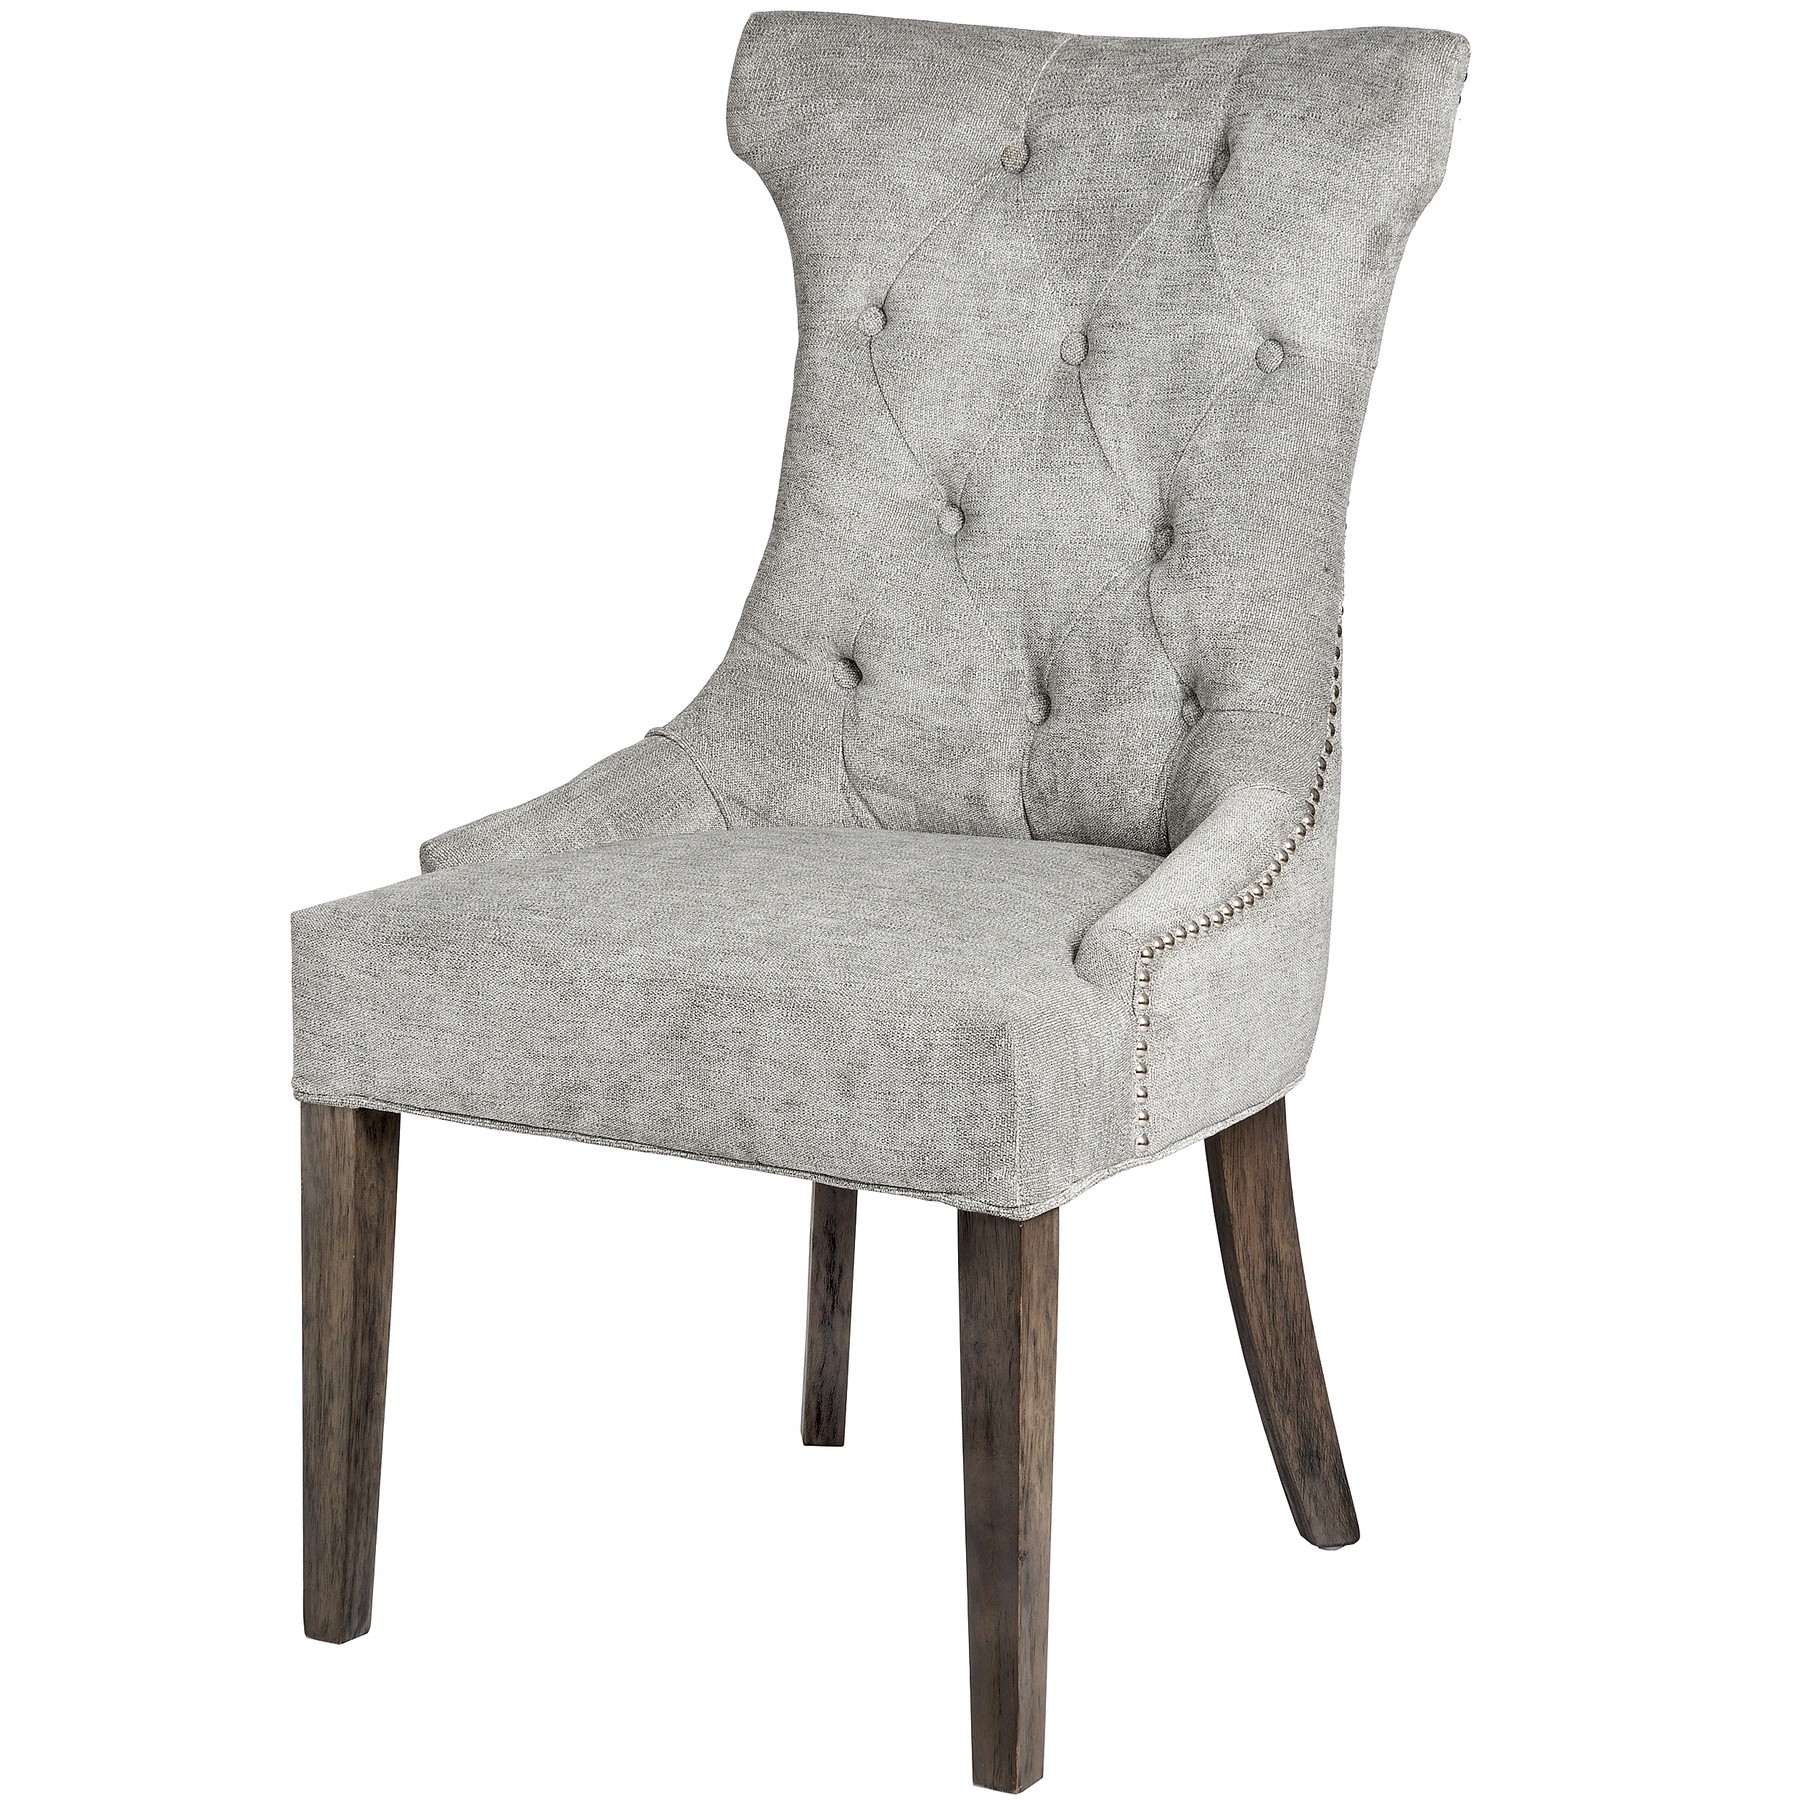 Estila Chesterfield luxusná jedálenská stolička Thatcher sivá so striebornými aplikáciami a nohami z dreva 102cm